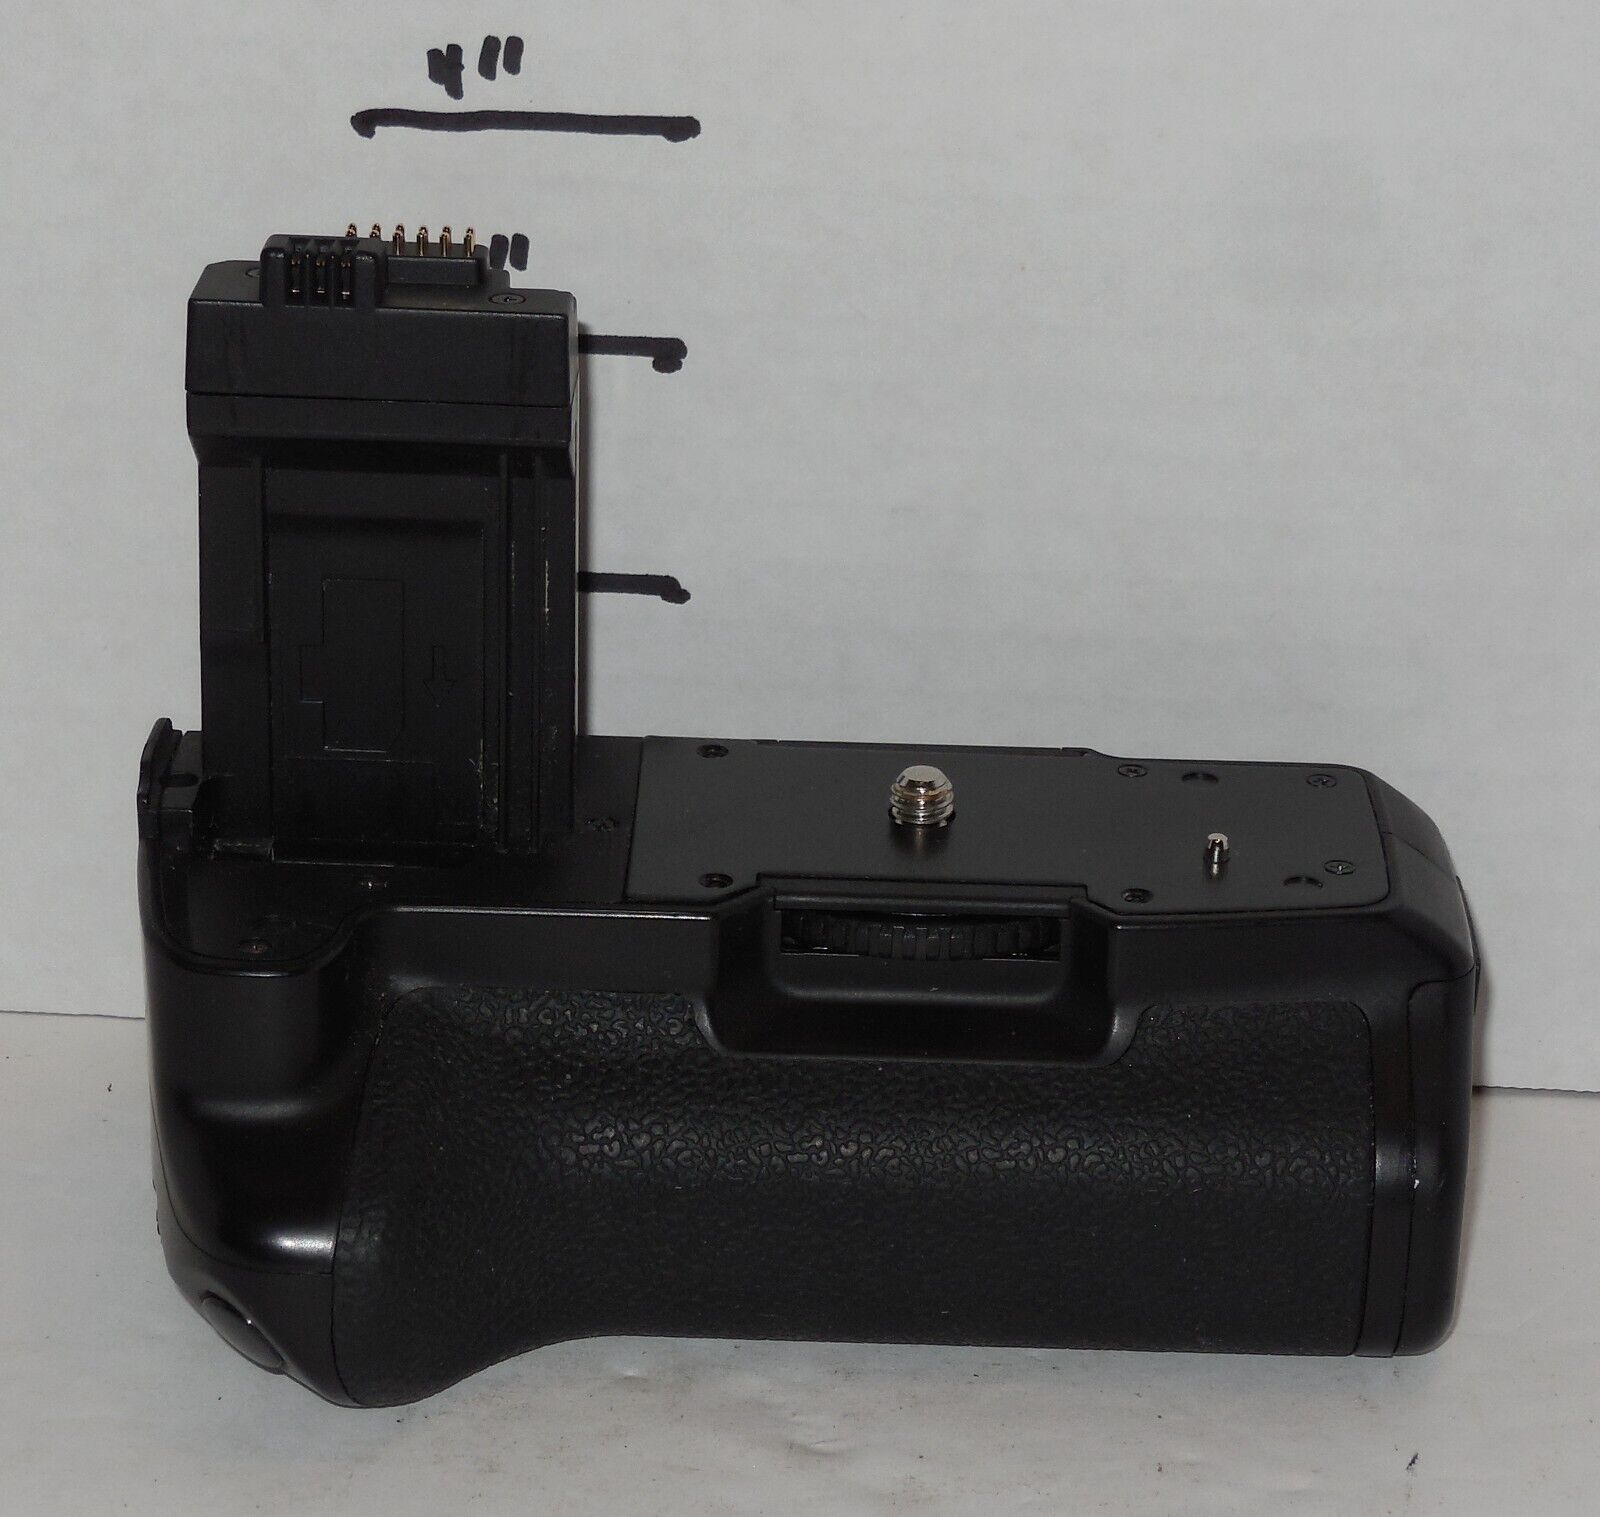 Bower XBGC1000D Power Grip for Canon LP-E5 DSLR Rebel EOS XSi 450D 500D 1000D - $49.25